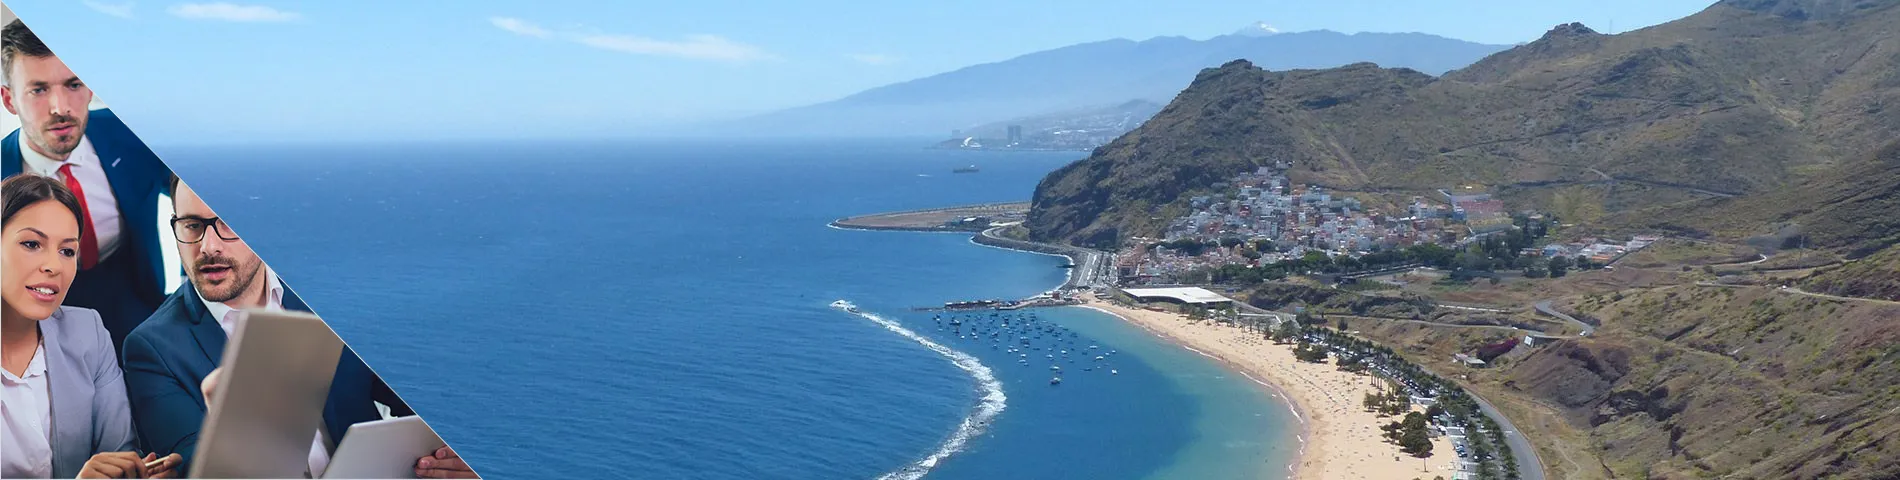 Tenerife - Általános és üzleti kombinált csoport